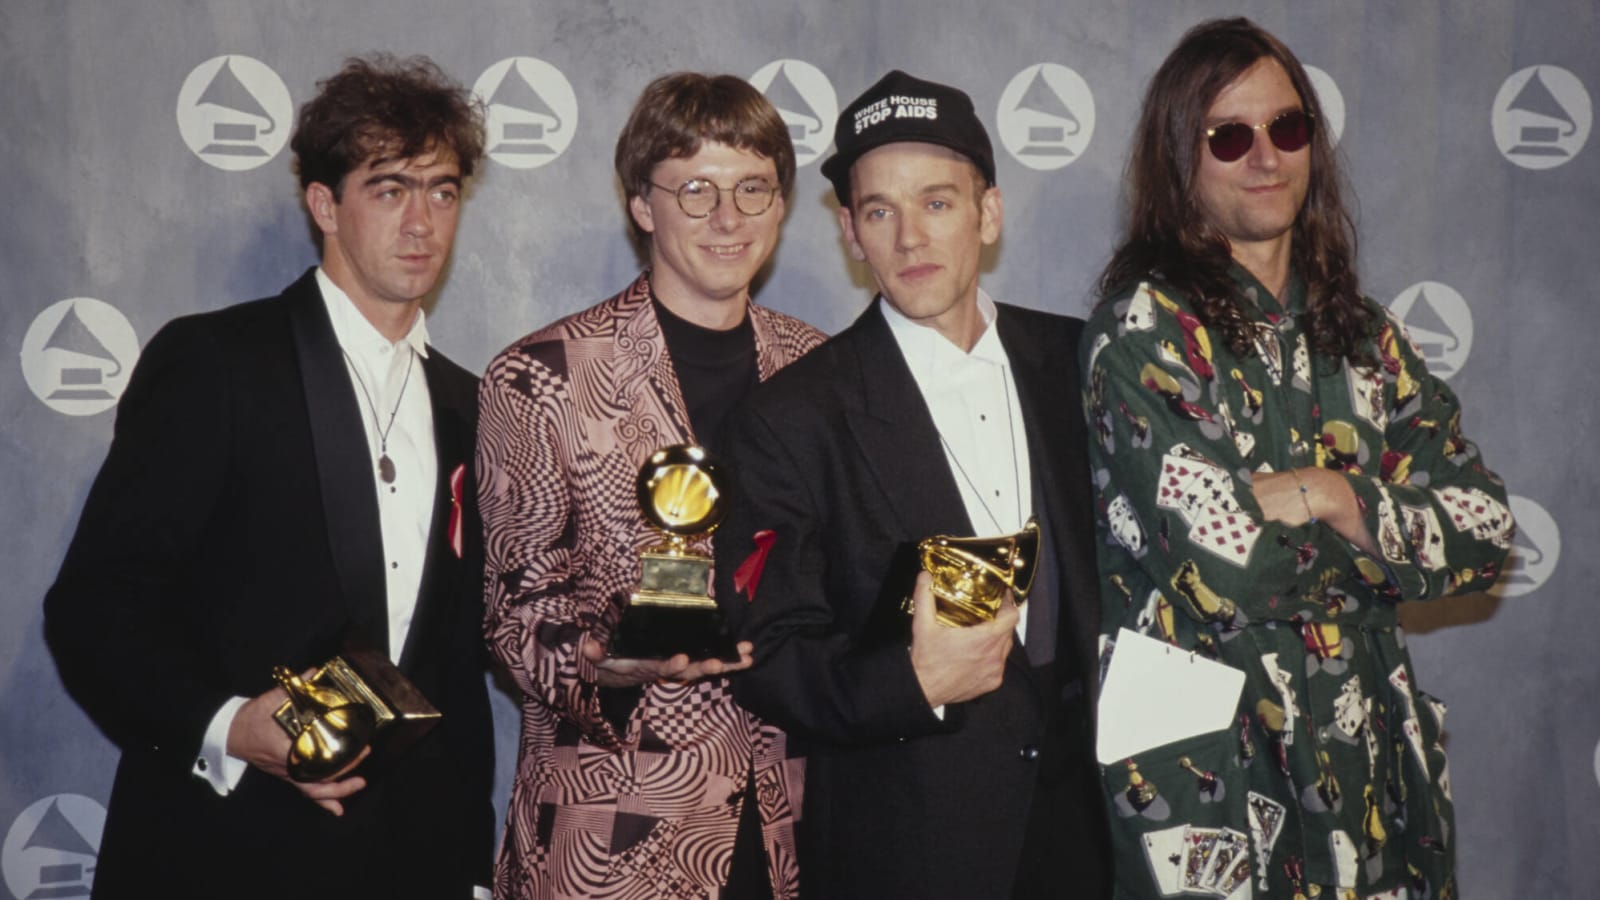 The definitive R.E.M. playlist